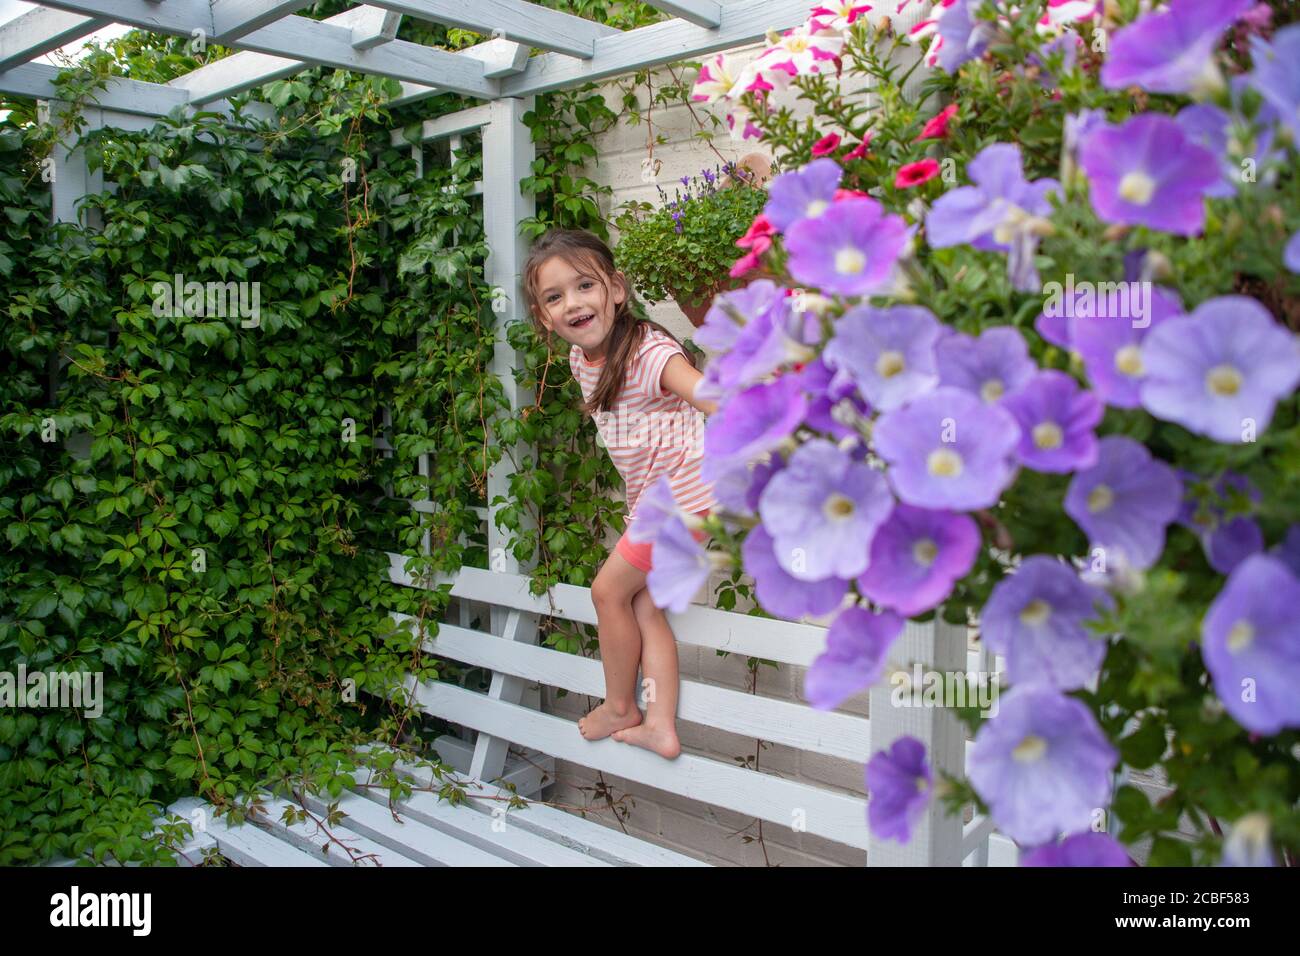 Une jeune fille de quatre ans de race blanche monte sur un banc de jardin bleu entouré de paniers suspendus petunia et d'une usine de super-réducteur de Virginie. Lancashire, Angleterre, Royaume-Uni Banque D'Images